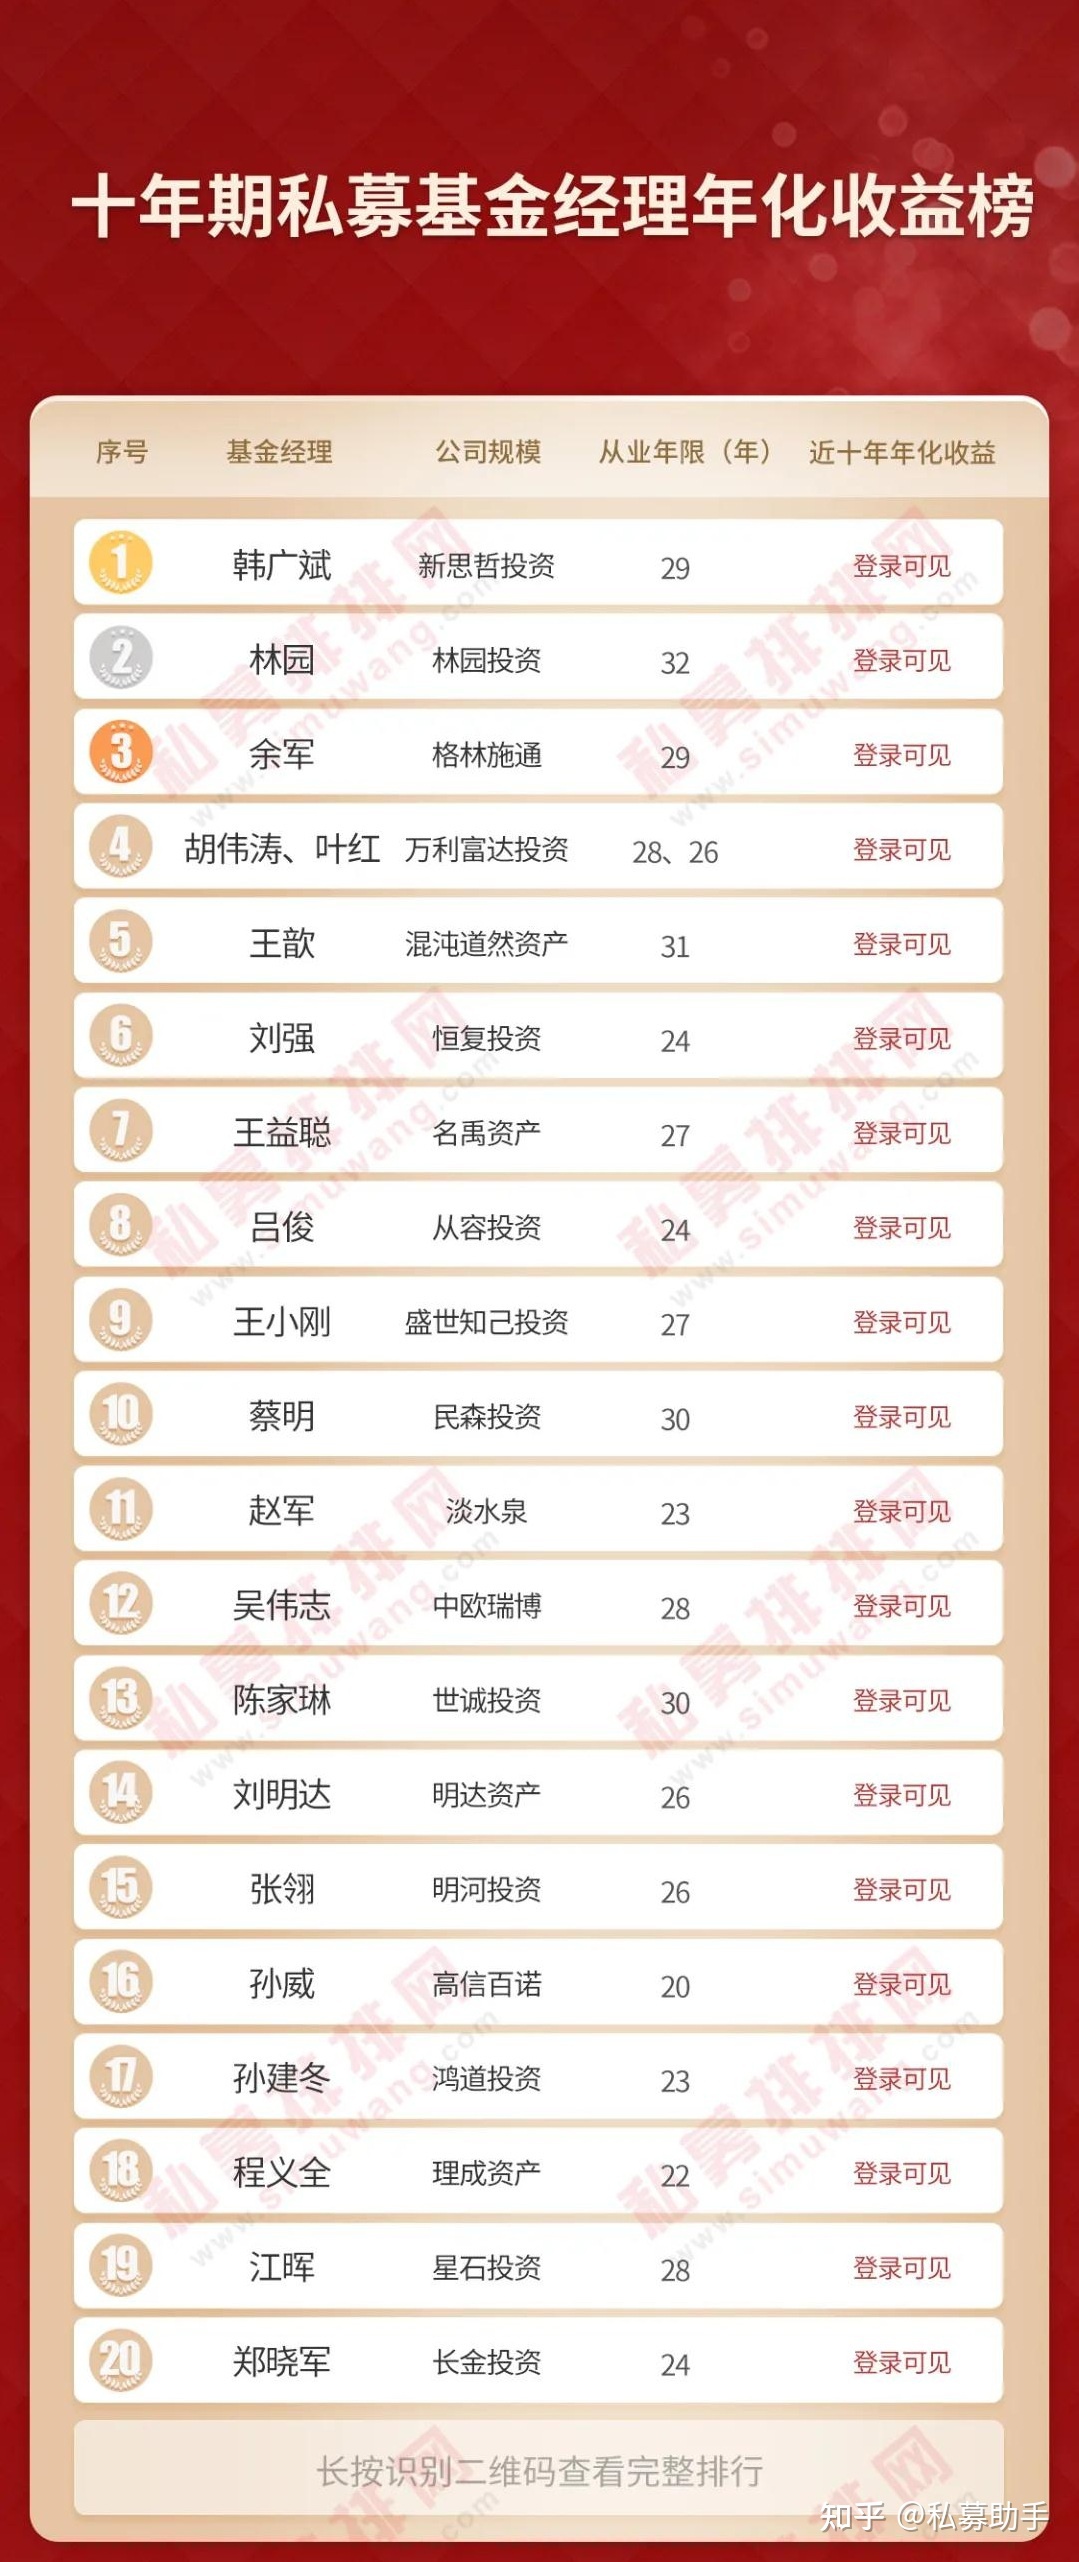 最新基金公司排名_中国最大公募基金公司排名_中国十大基金公司排名